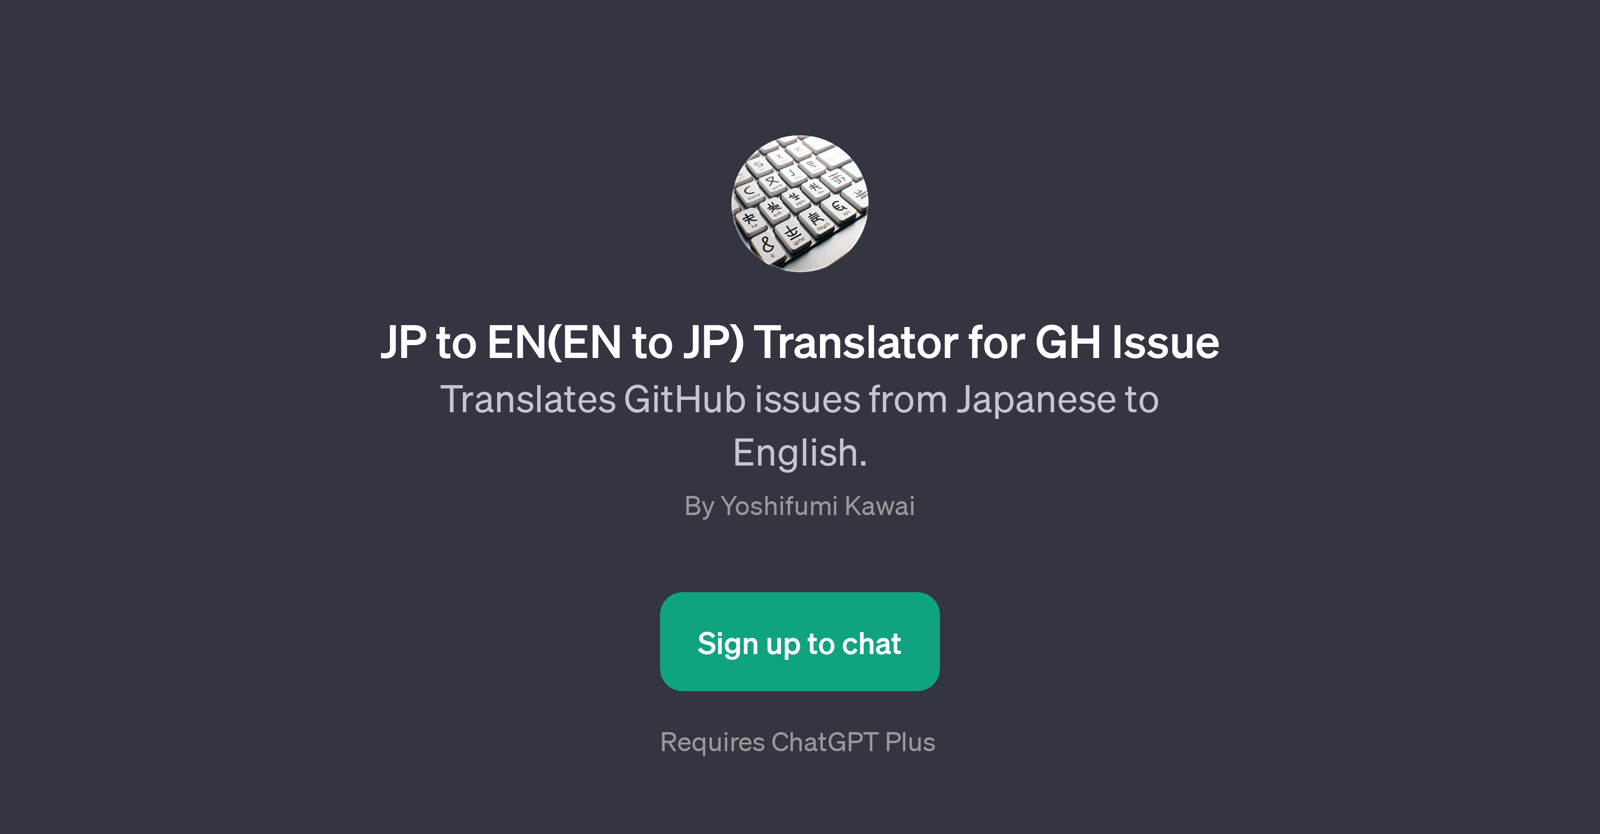 JP to EN(EN to JP) Translator for GH Issue website